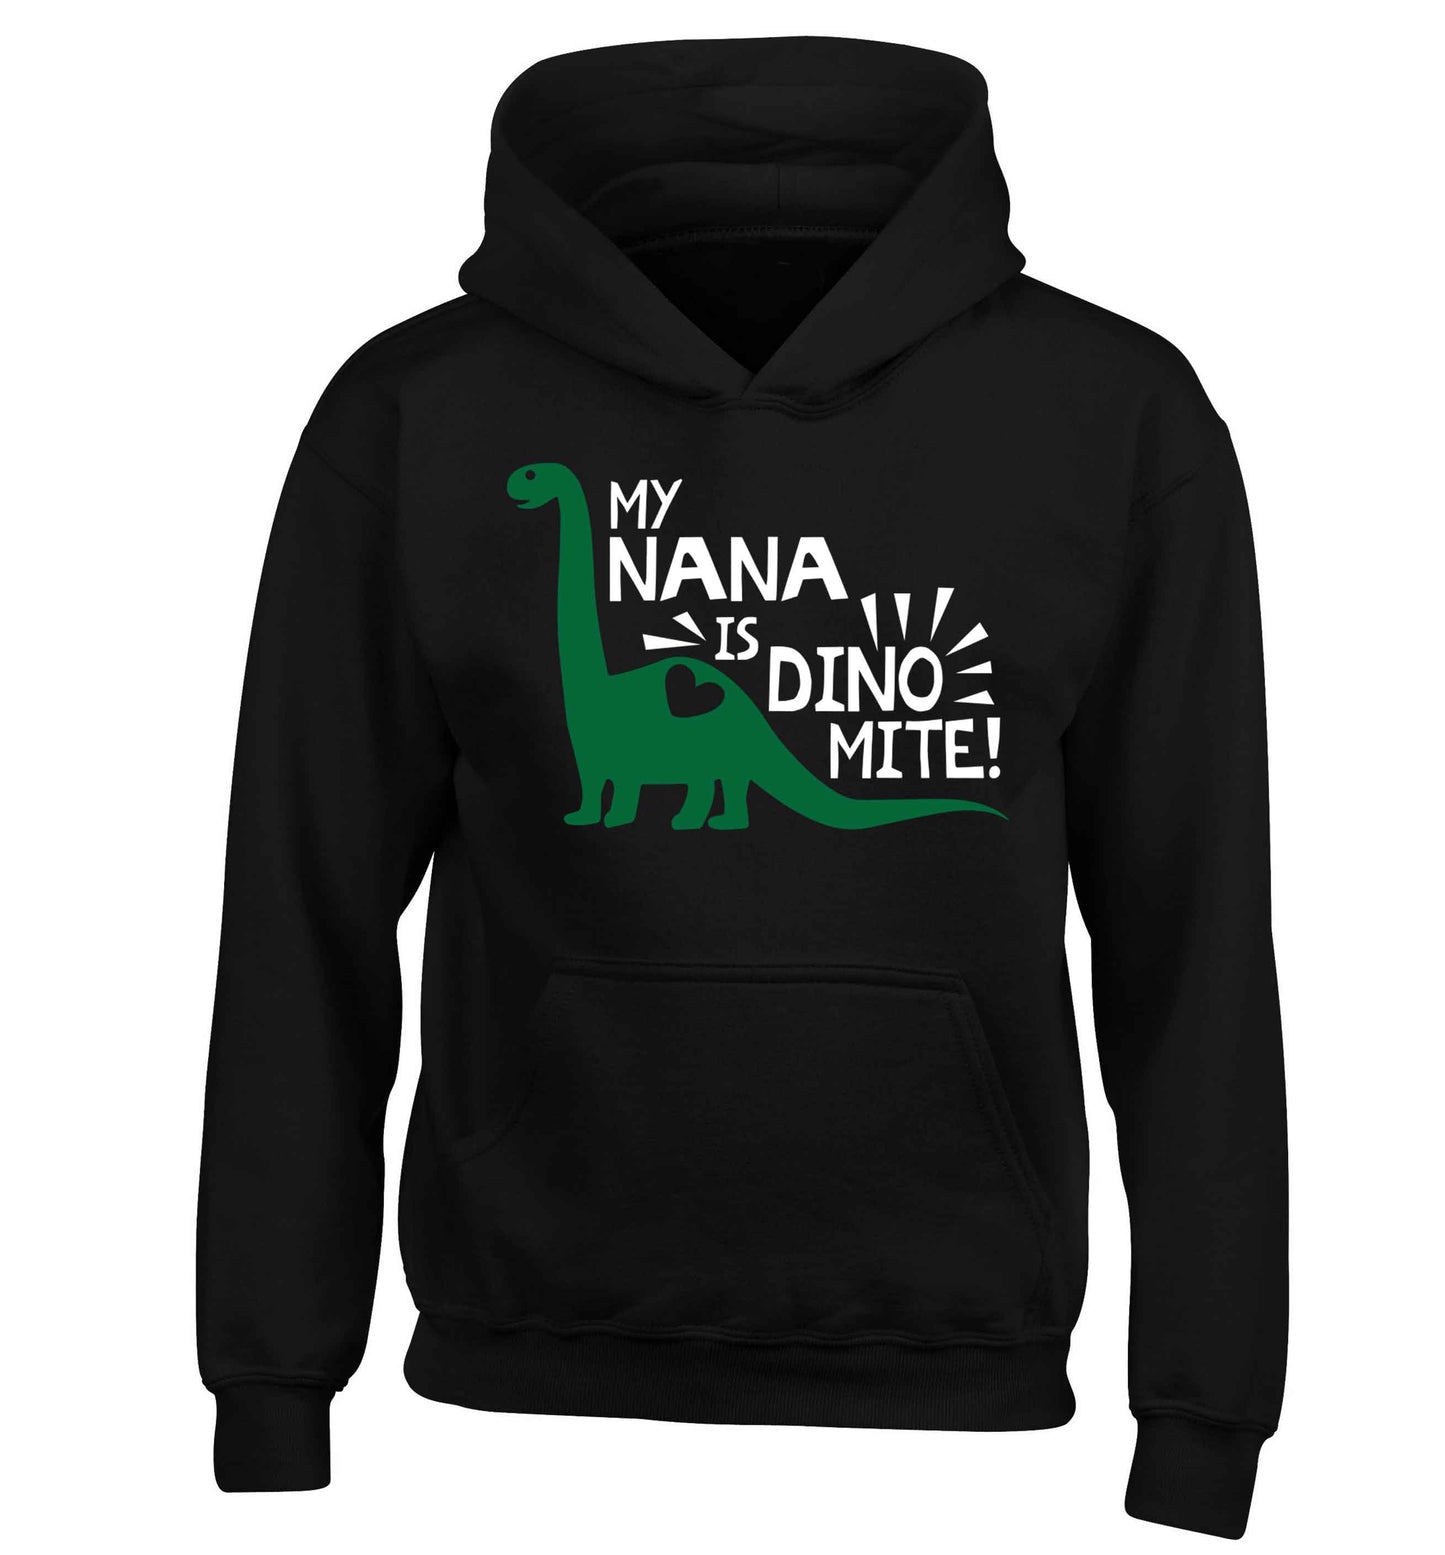 My nana is dinomite! children's black hoodie 12-13 Years